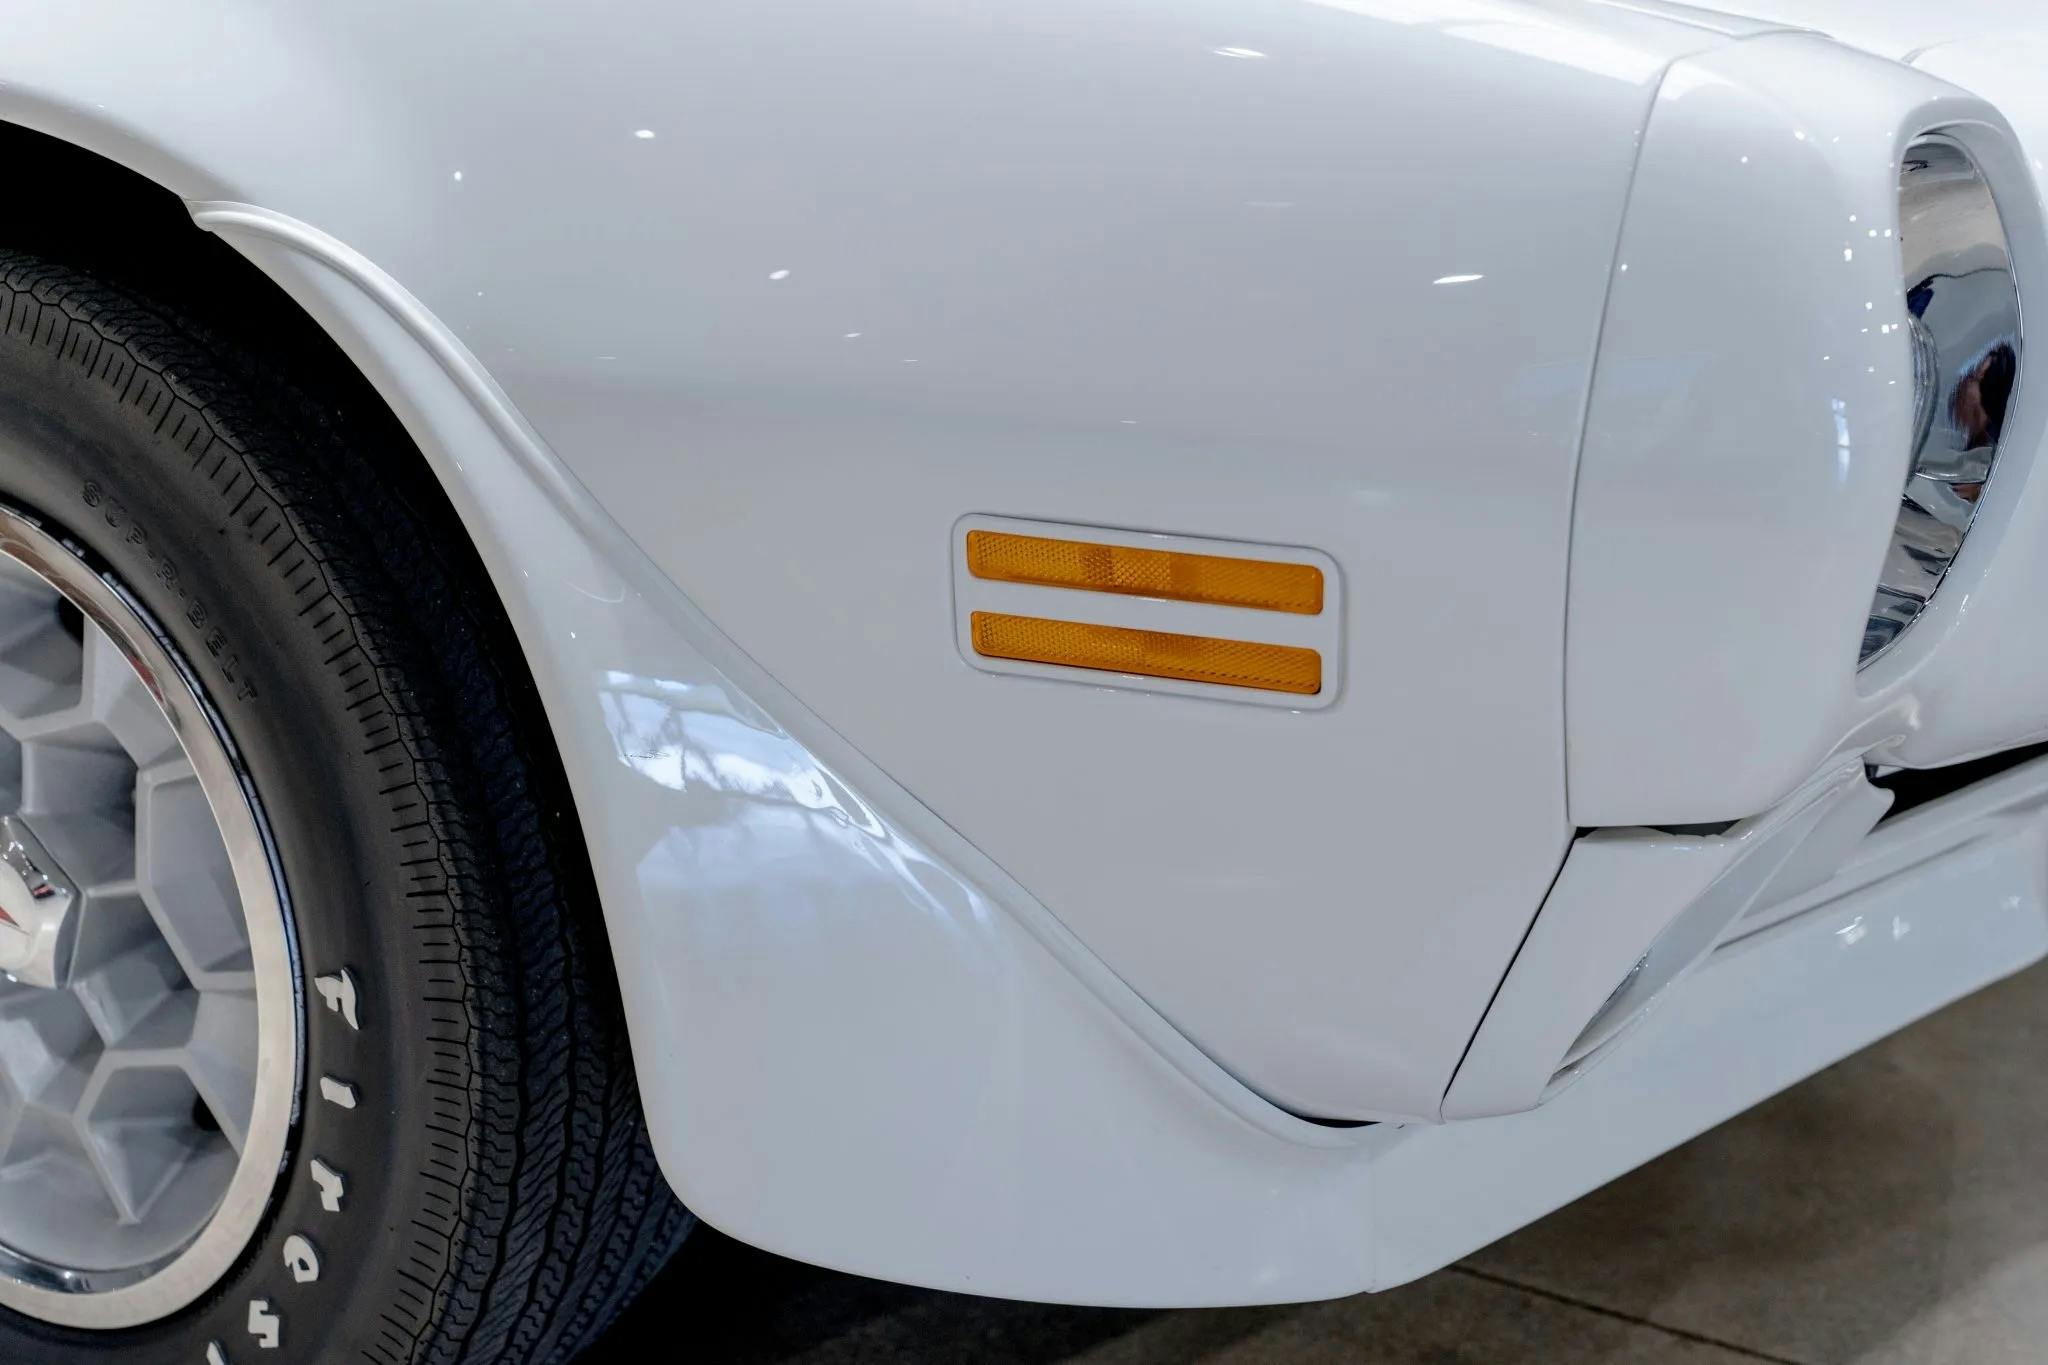 1970s Pontiac Firebird Trans Am Gets A Stunning Restomod Overhaul